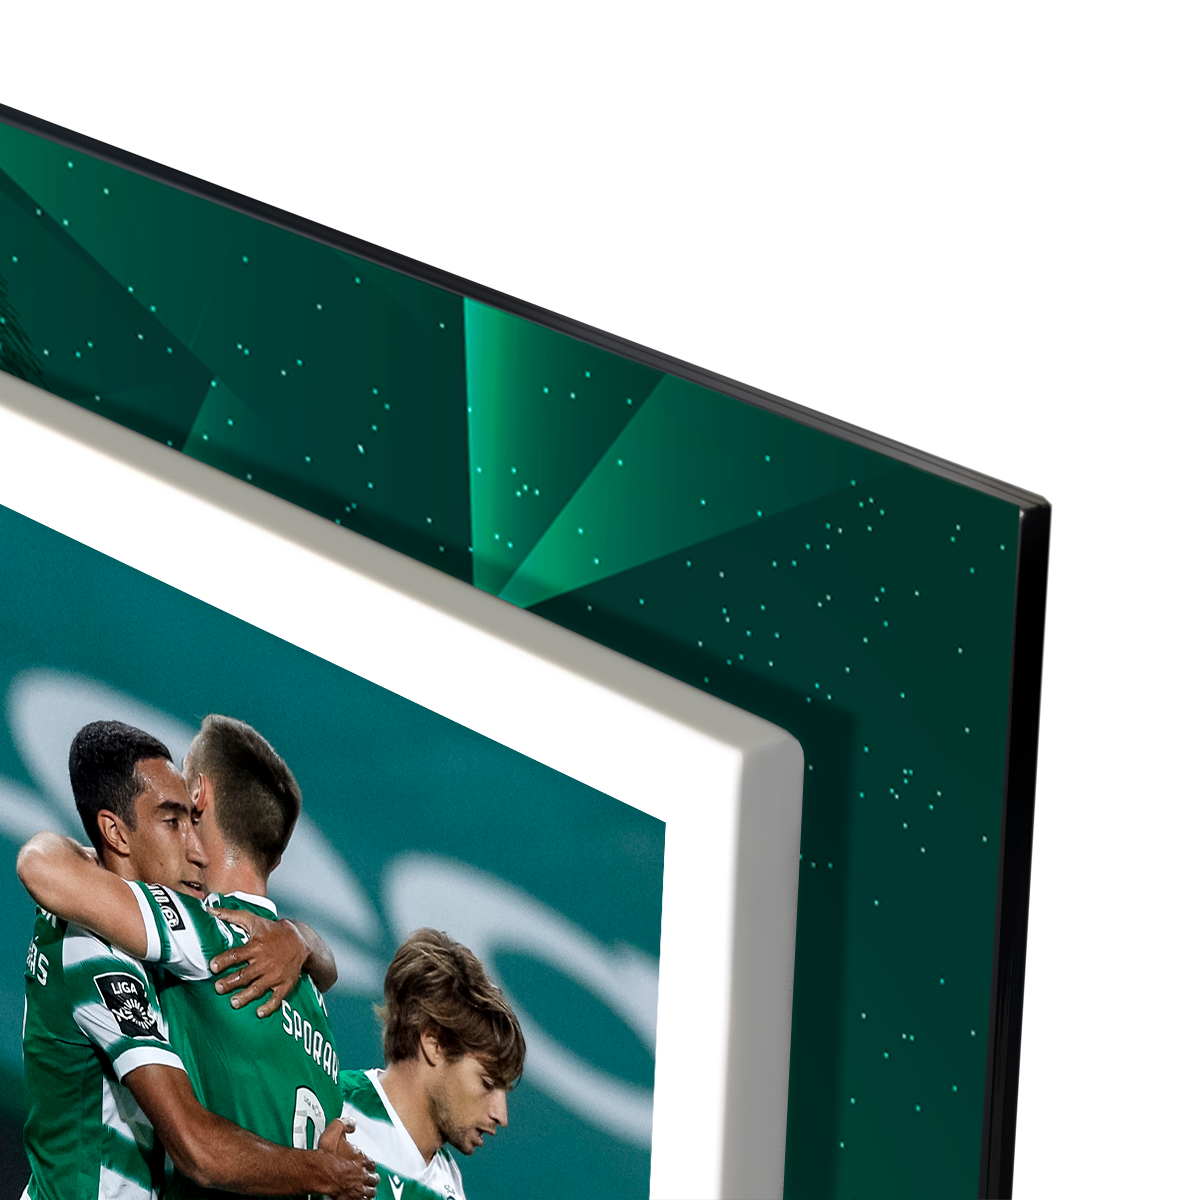 Moldura para Fotos Sporting CP Leão - Personalizada